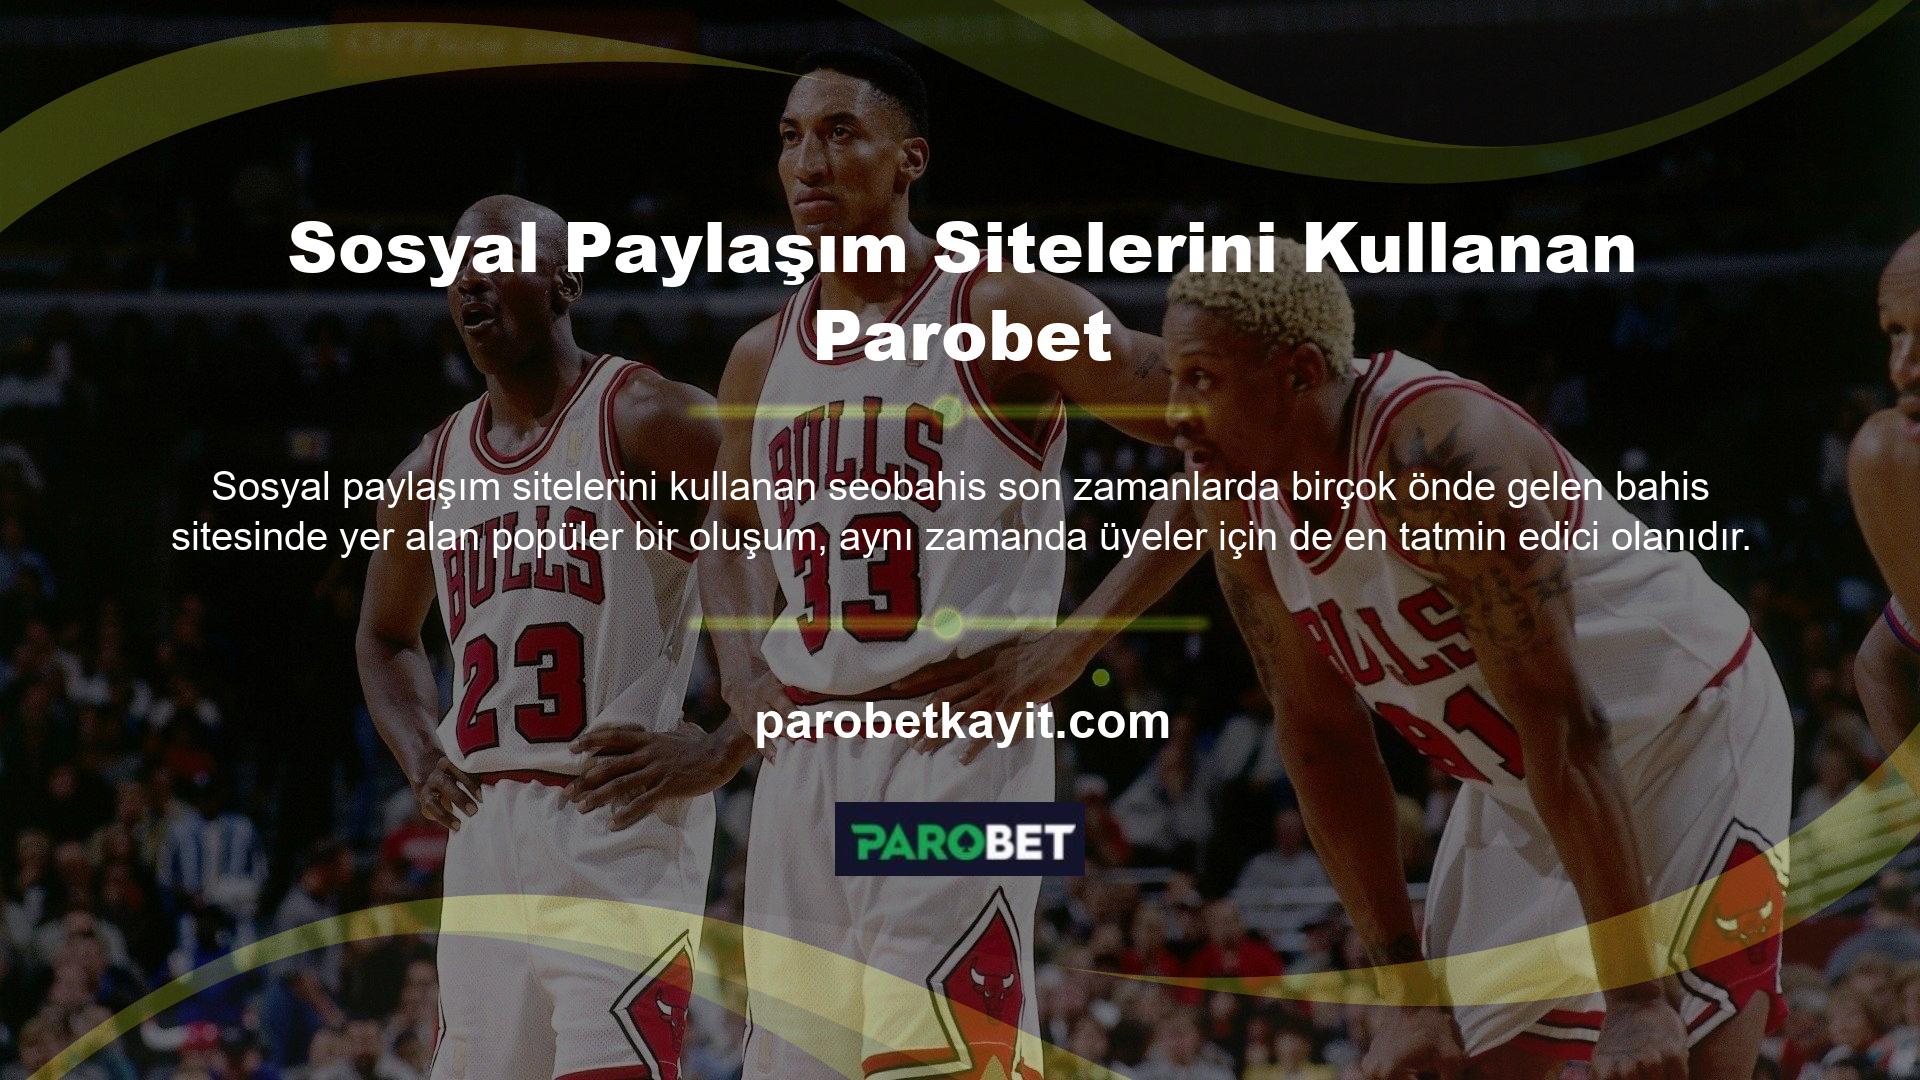 Parobet Türkiye, hem casino hem de bahis tutkunlarına hizmet vererek yüksek düzeyde müşteri memnuniyeti sağlamaktadır